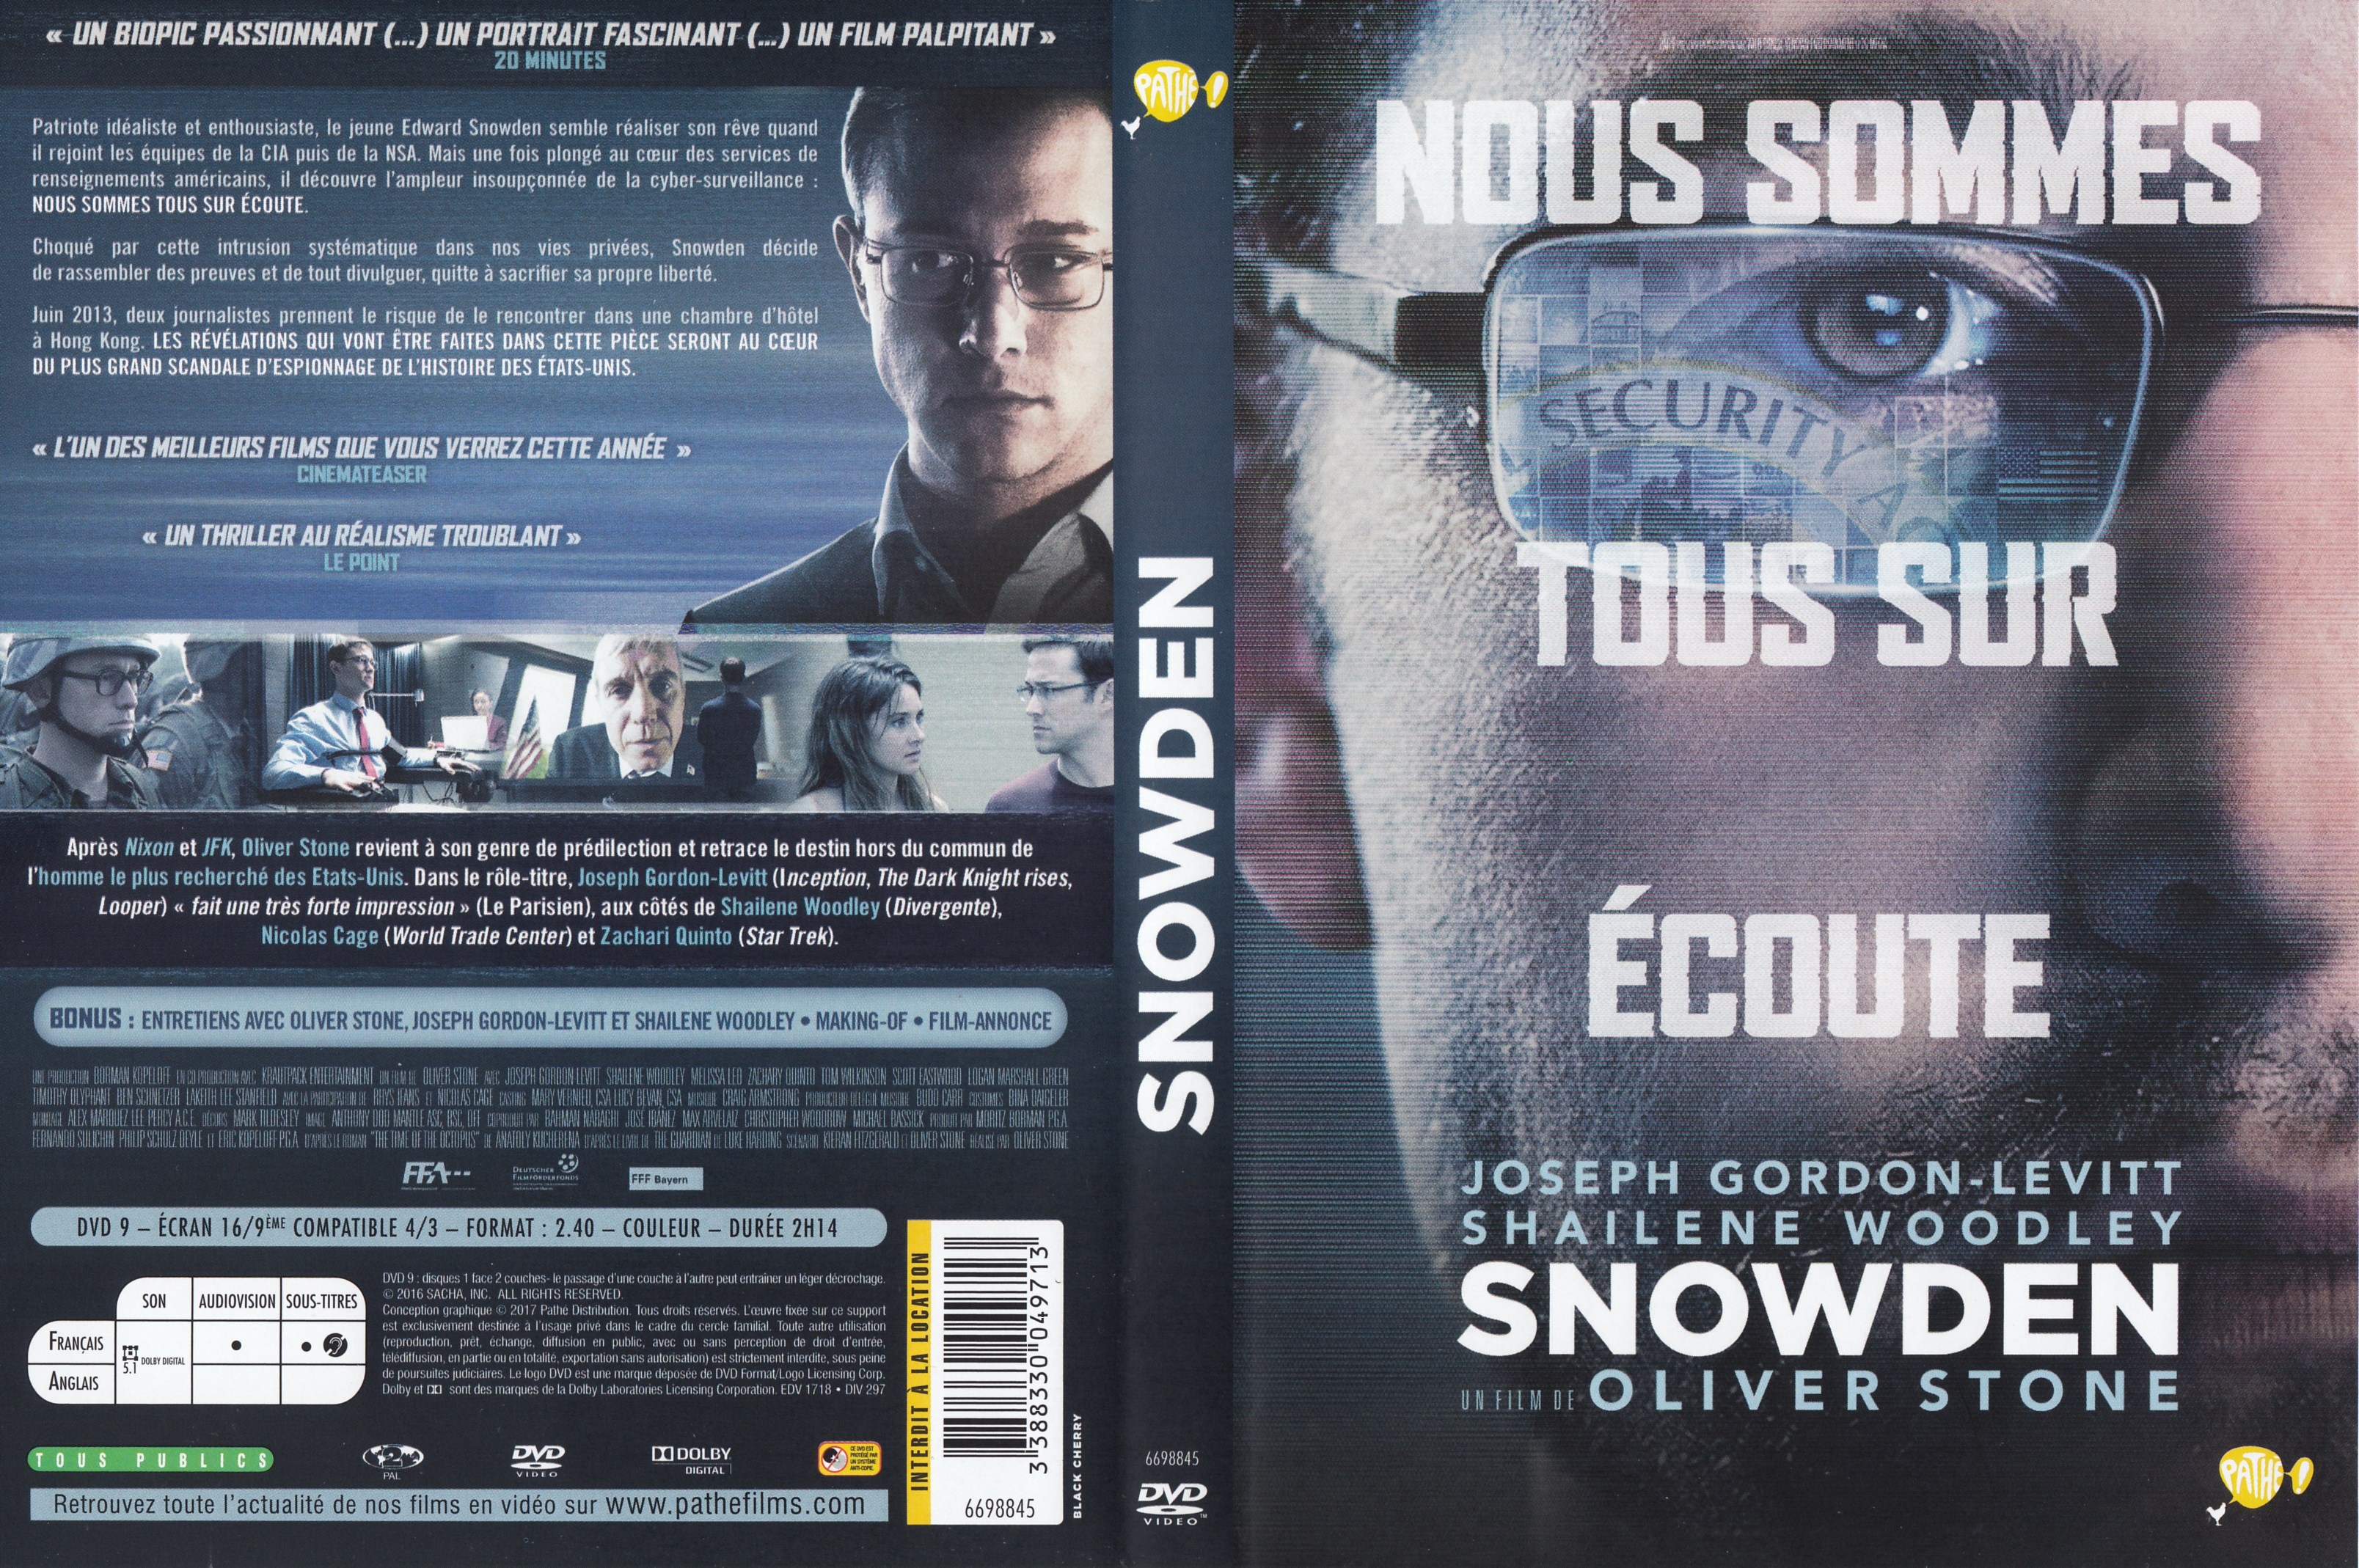 Jaquette DVD Snowden